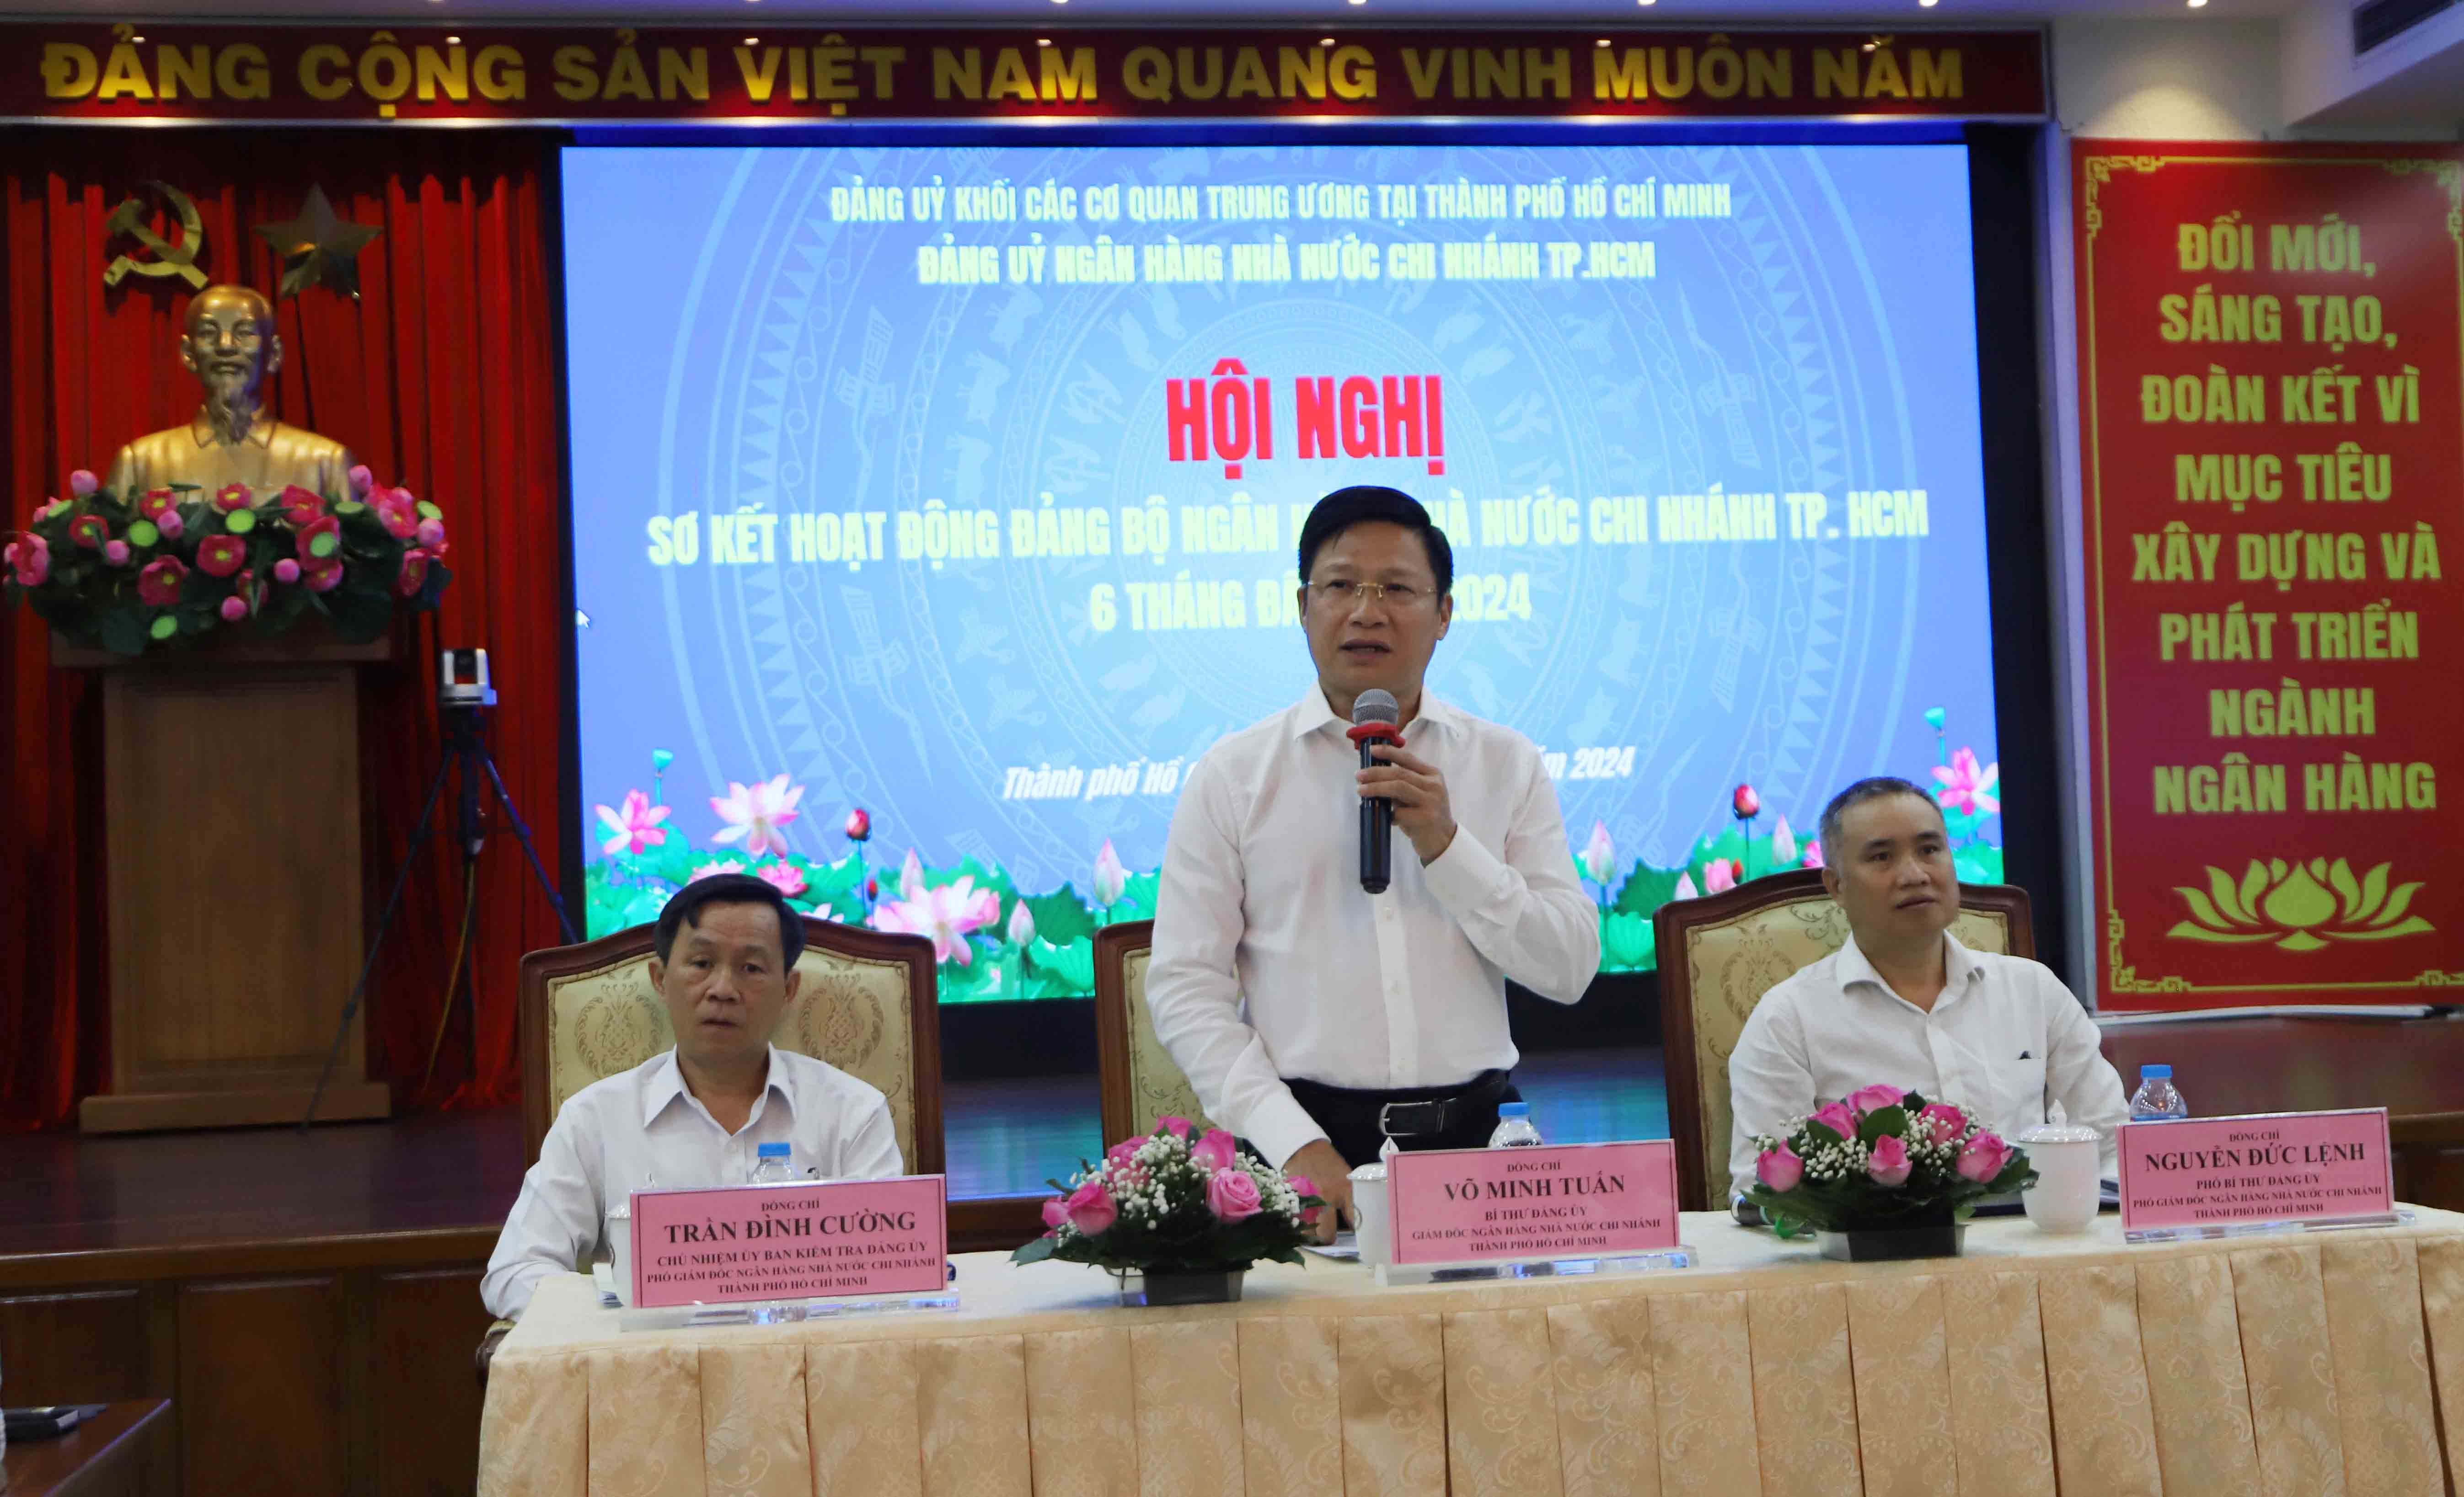 Ông Võ Minh Tuấn – Giám đốc NHNN chi nhánh TP. Hồ Chí Minh phân tích đánh giá những mặt thuận lợi và khó khăn của bối cảnh kinh tế năm 2024 ngành Ngân hàng cần phải vượt qua góp phần tích cực vào tăng trưởng kinh tế thành phố